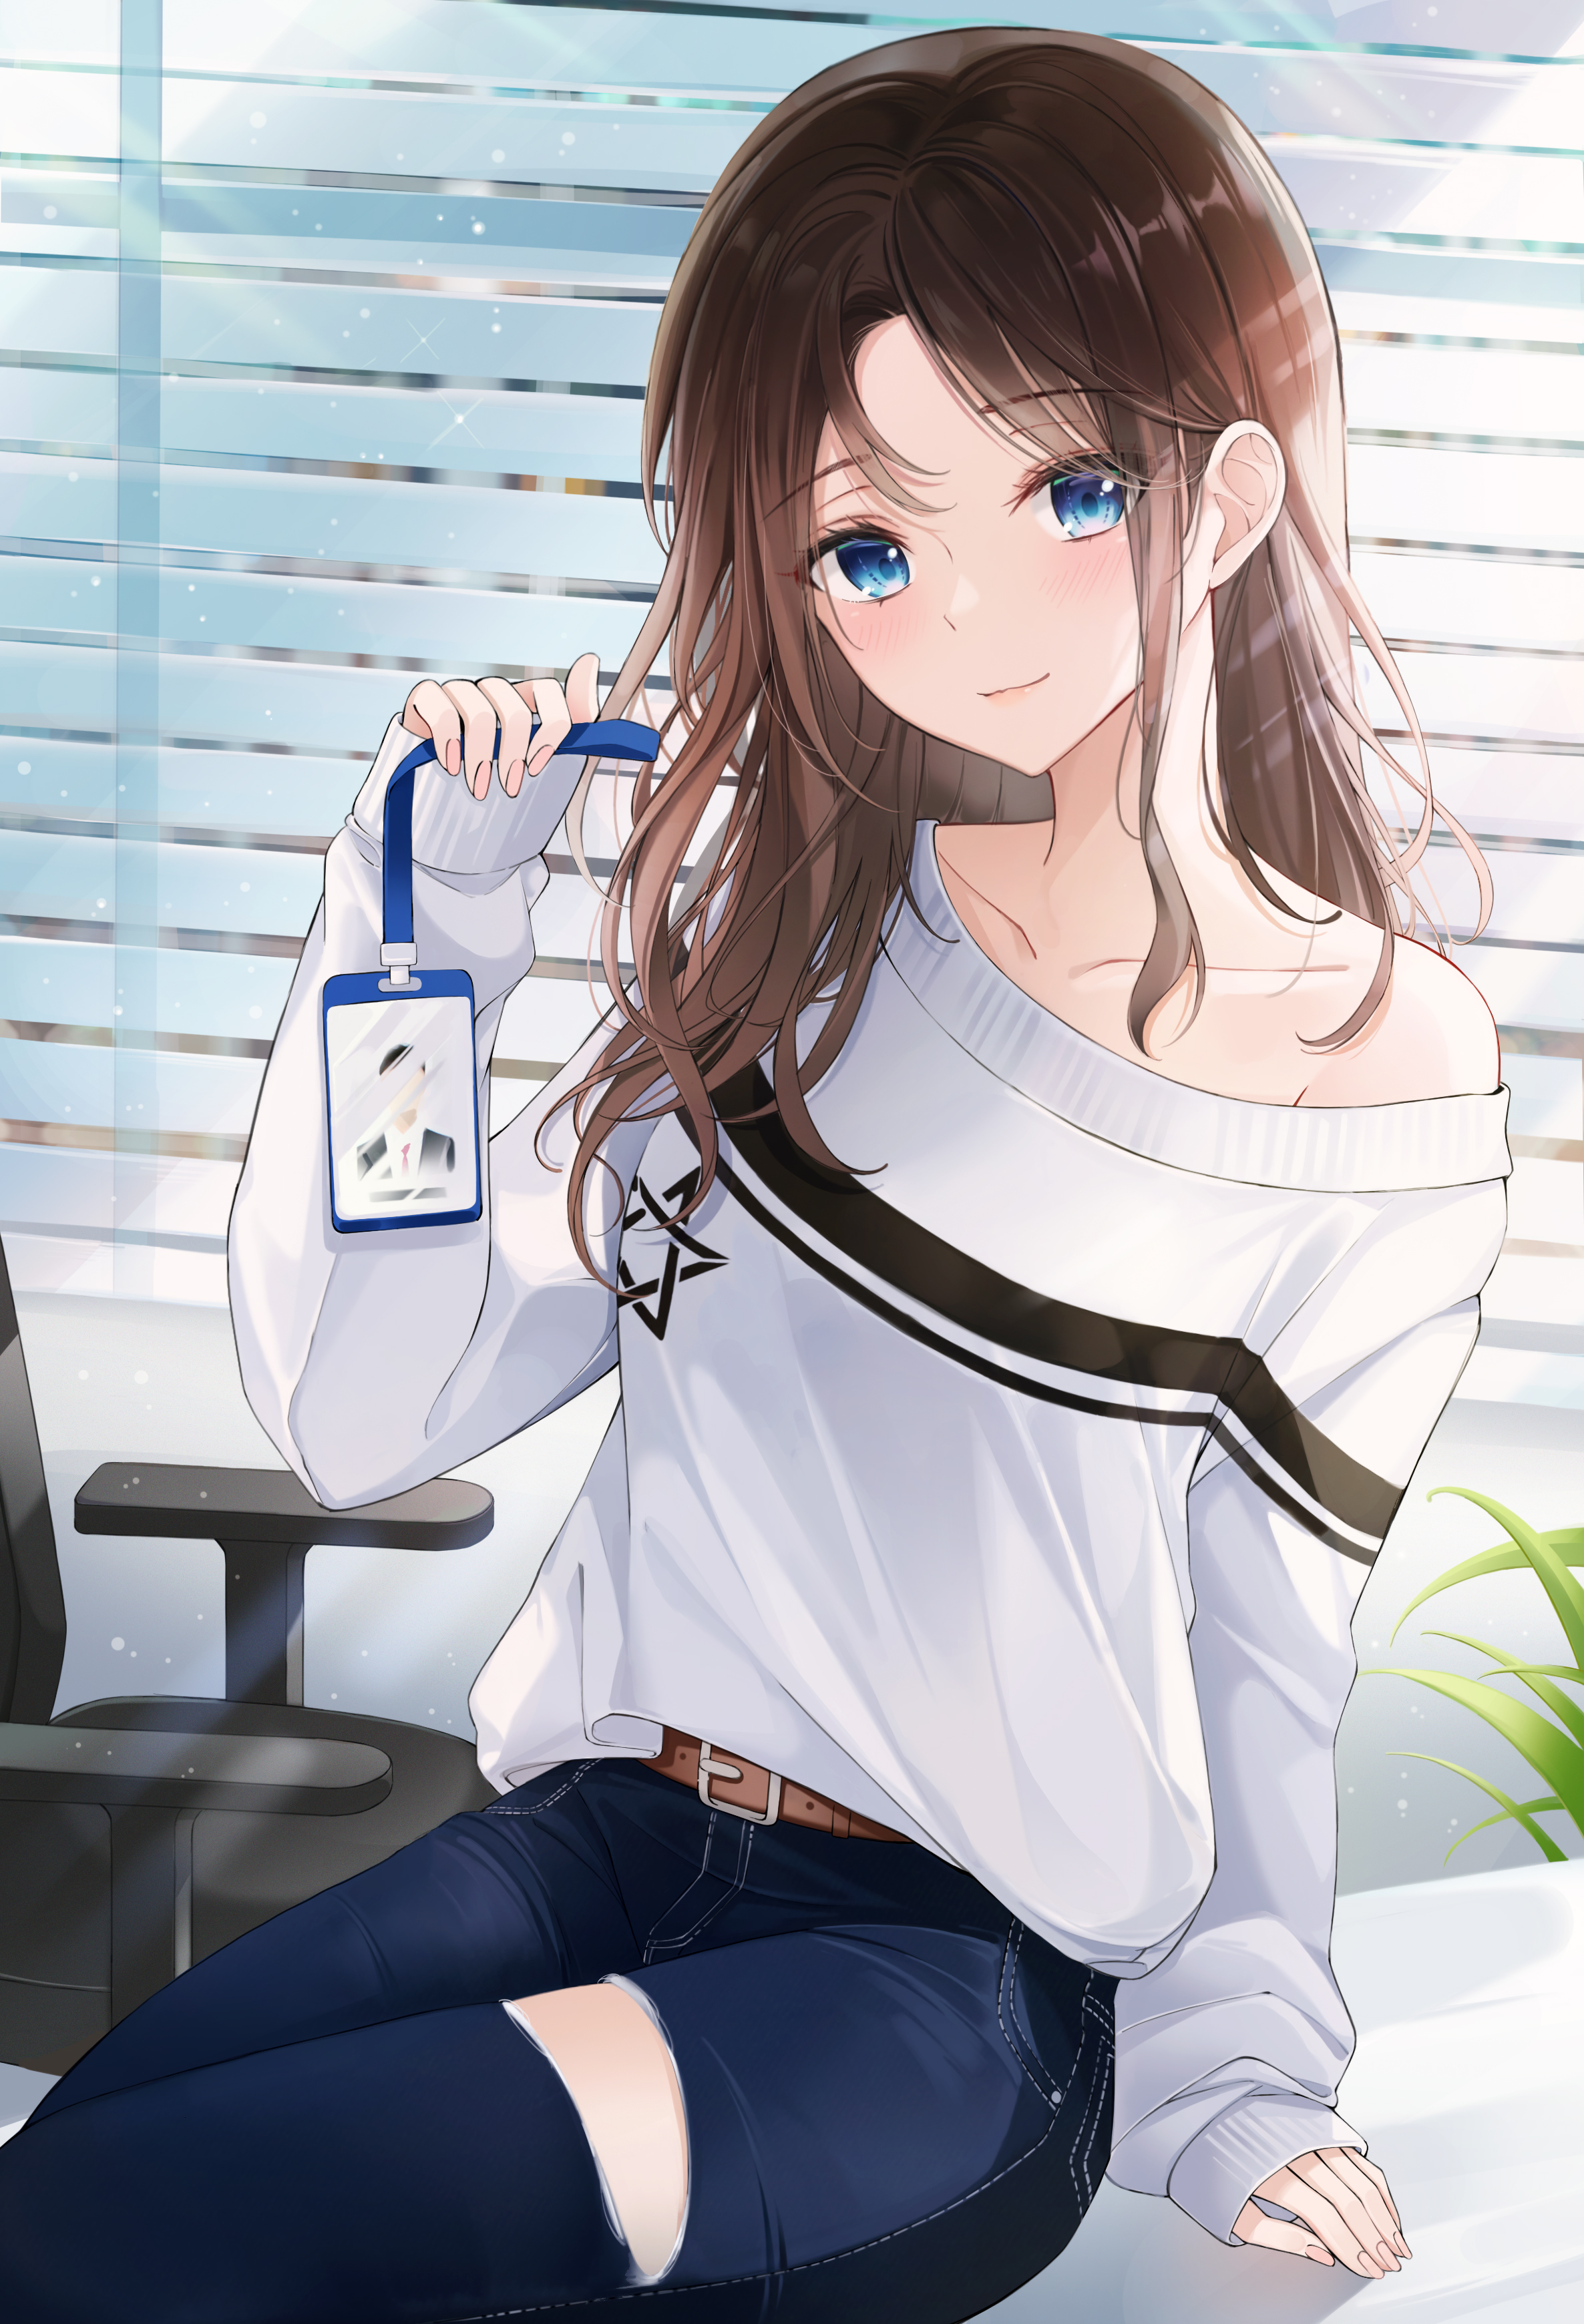 Anime Girls Jeans Blue Eyes Brunette Sweater Office Artwork Nam Sj 2372x3481